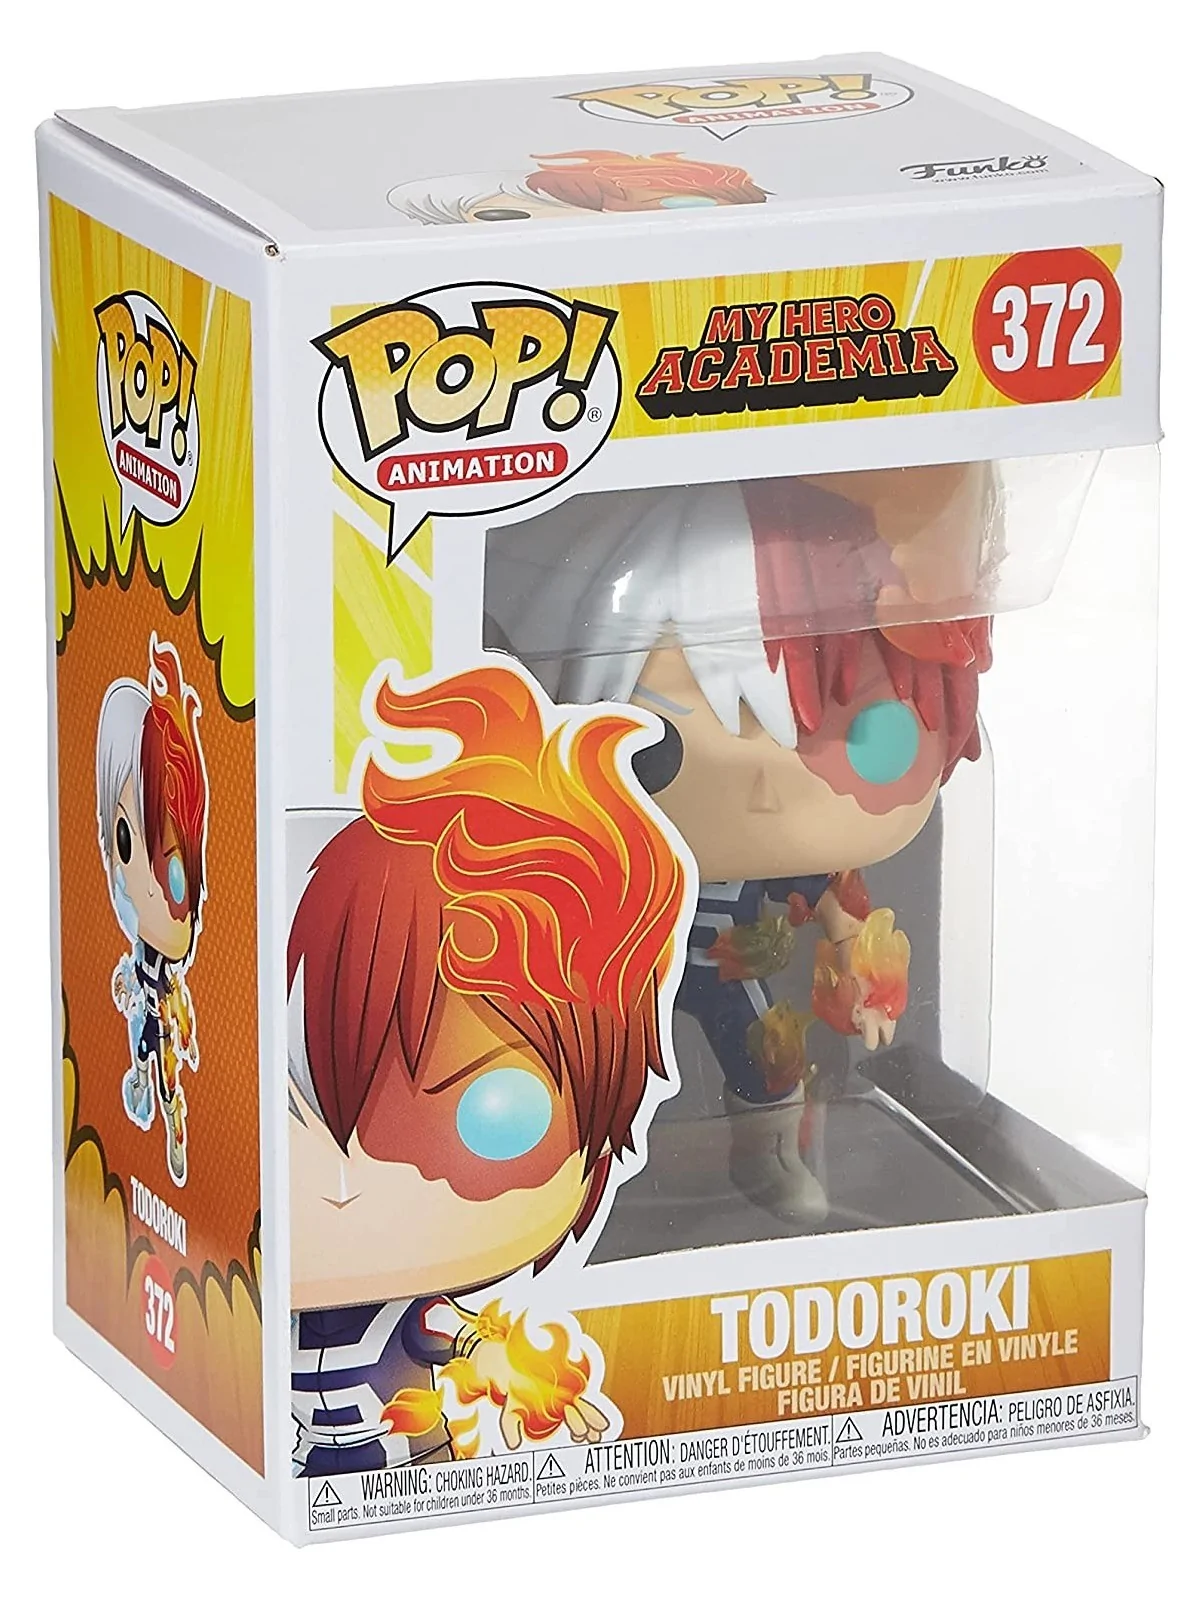 Comprar Funko POP! My Hero Academia: Todoroki (372) barato al mejor pr